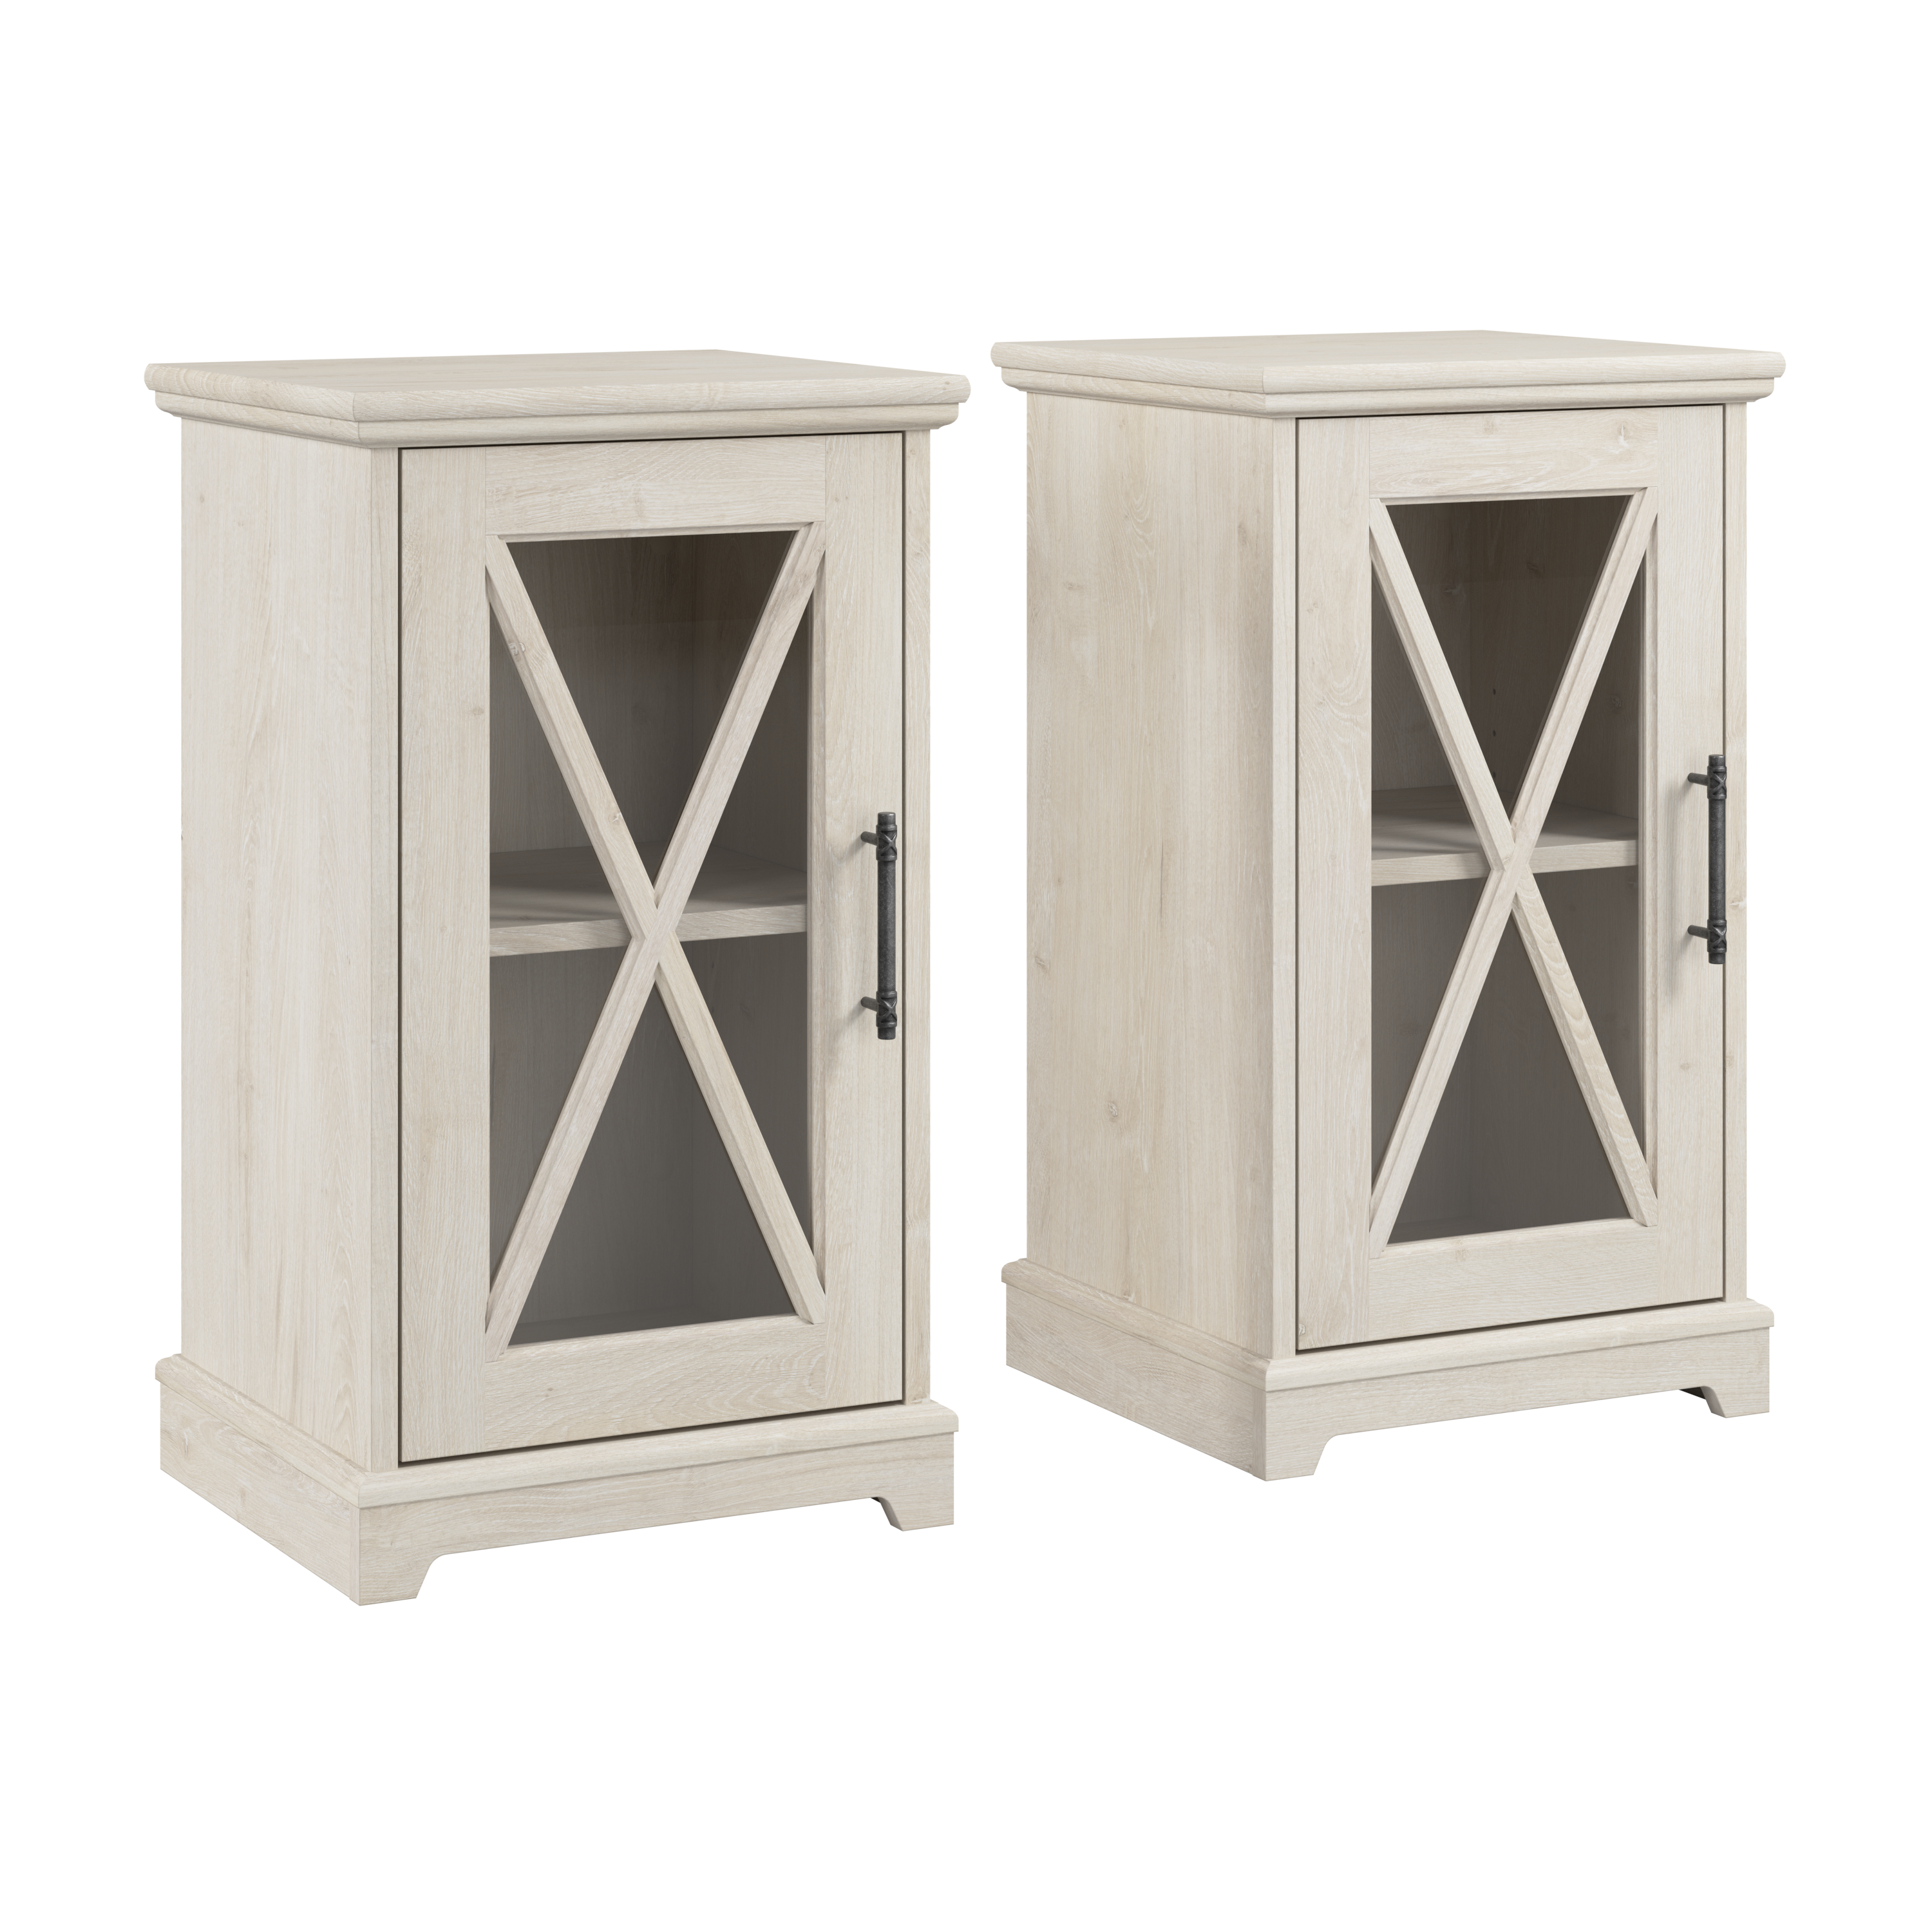 Shop Bush Furniture Lennox Small Farmhouse End Table with Storage - Set of 2 02 LEN002LW #color_linen white oak